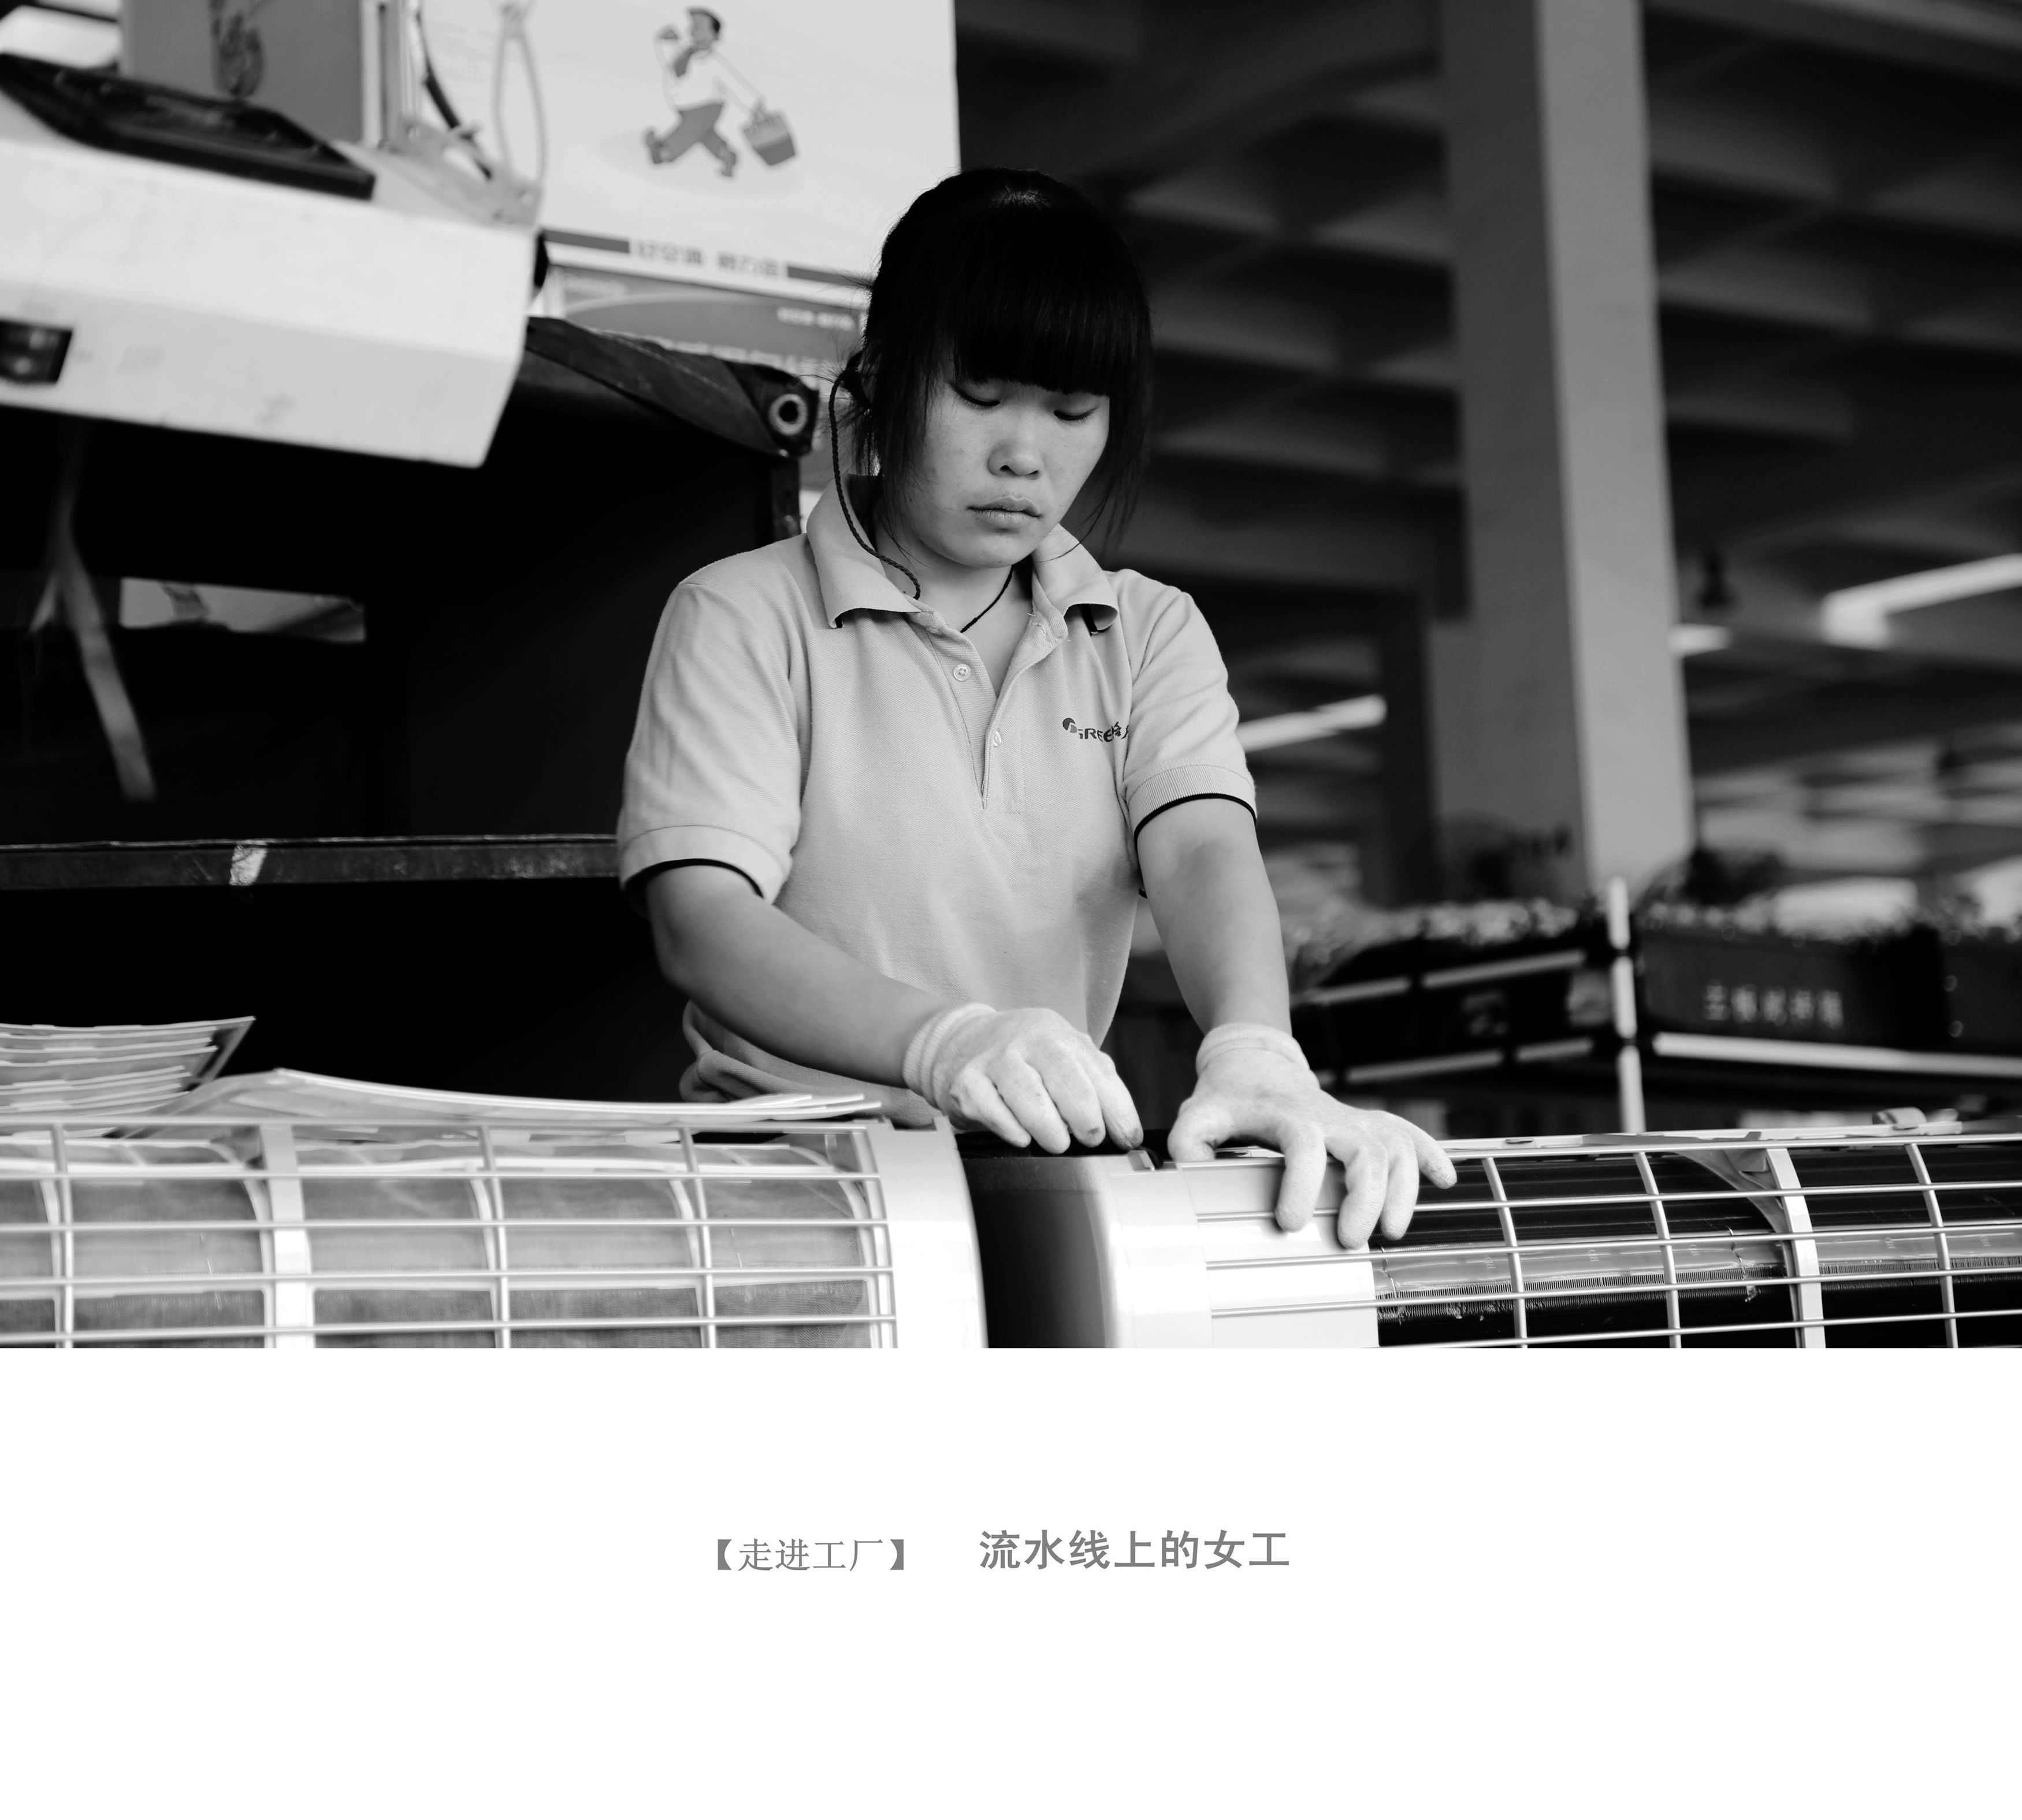 《平凡中的美丽——我眼中的造船女工》徐晓红作品--中国摄影家协会网